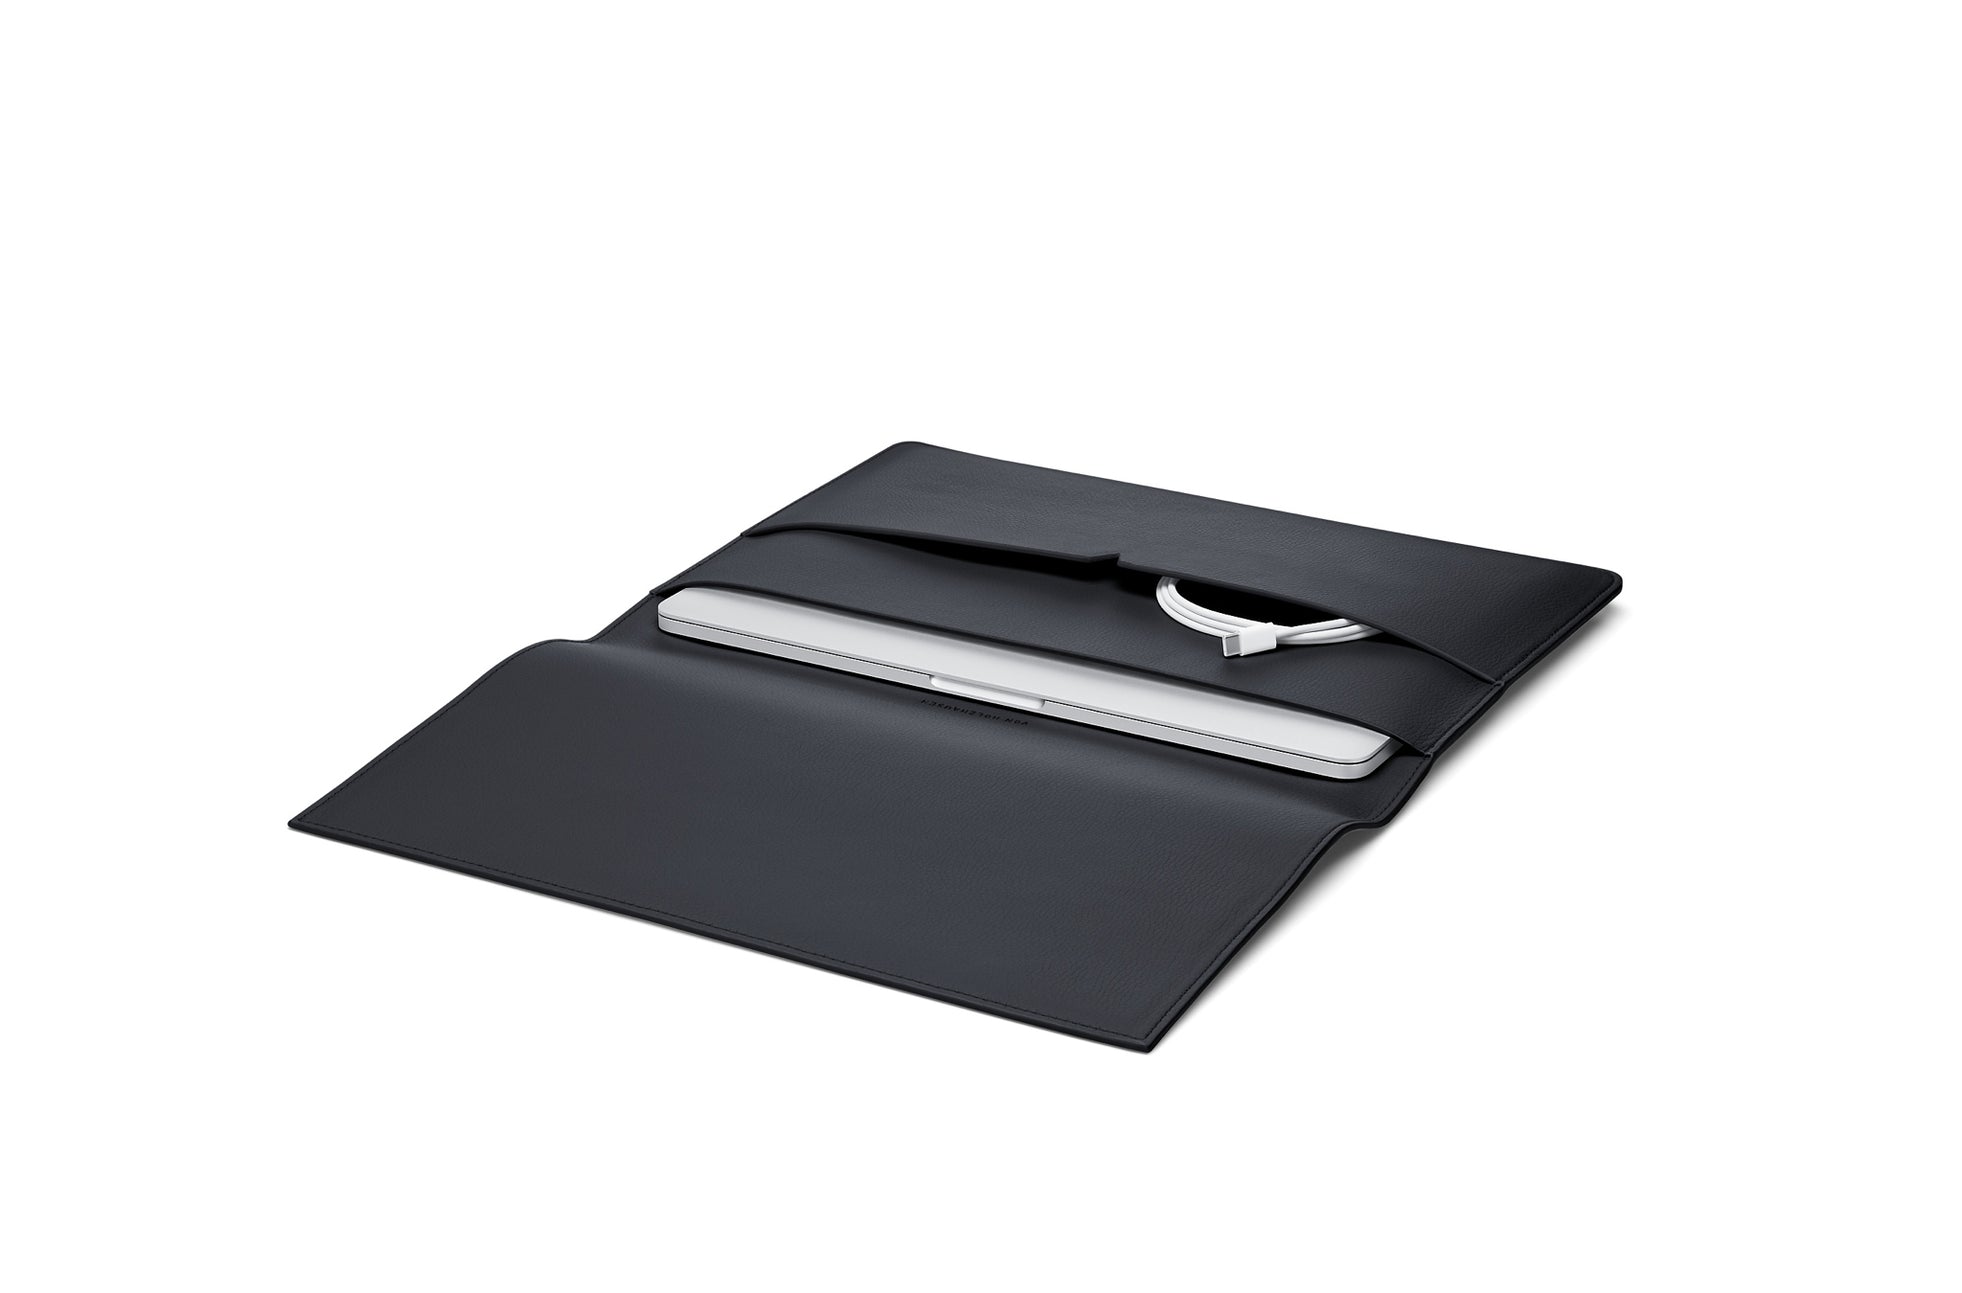 The MacBook Portfolio 13-inch - Sample Sale in Technik in Black image 6